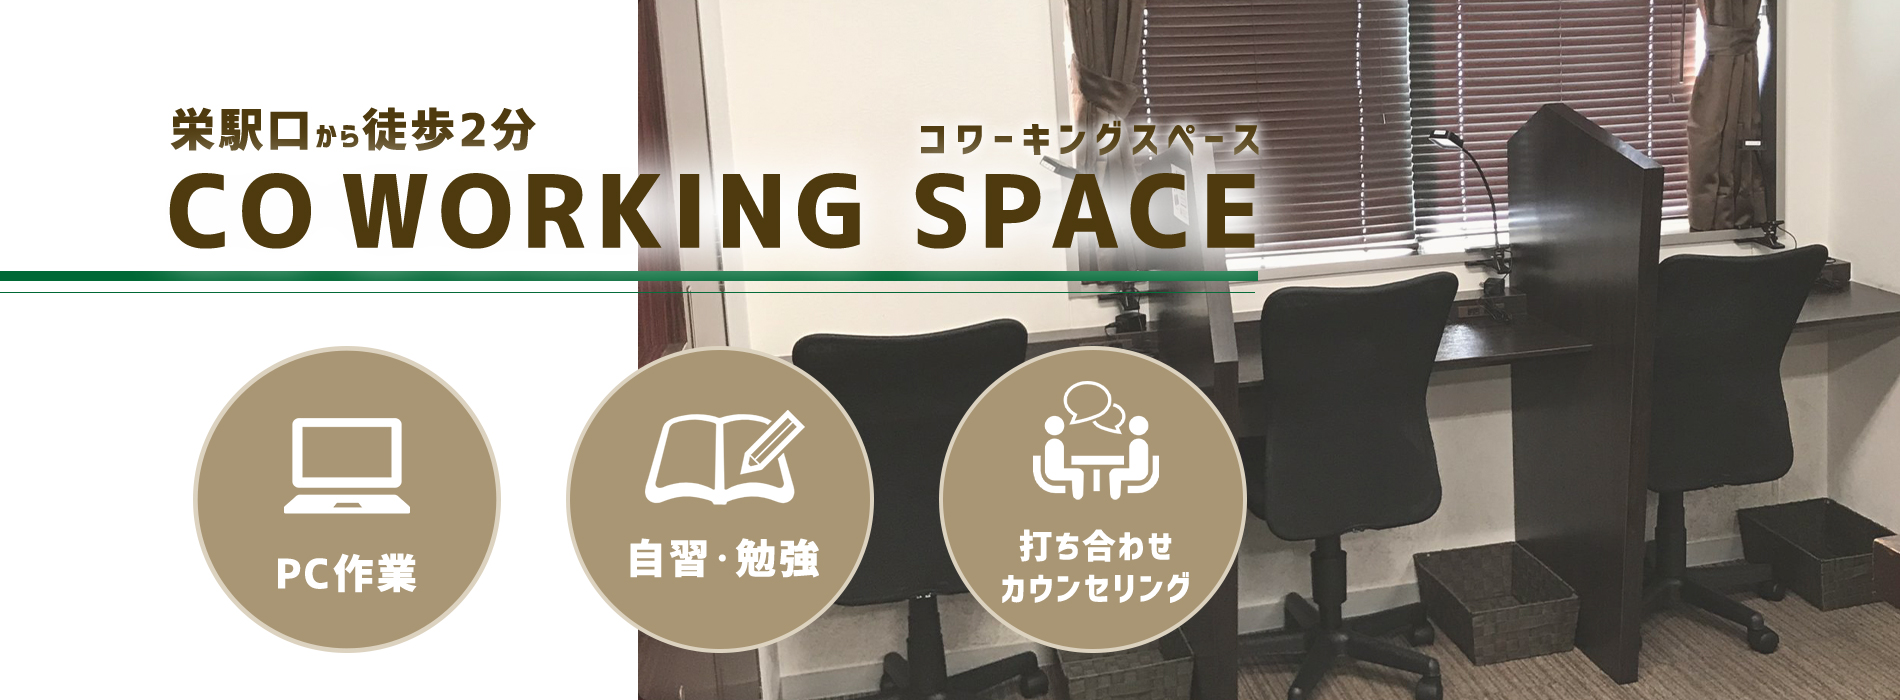 名古屋栄自習勉強できるコワーキングスペース